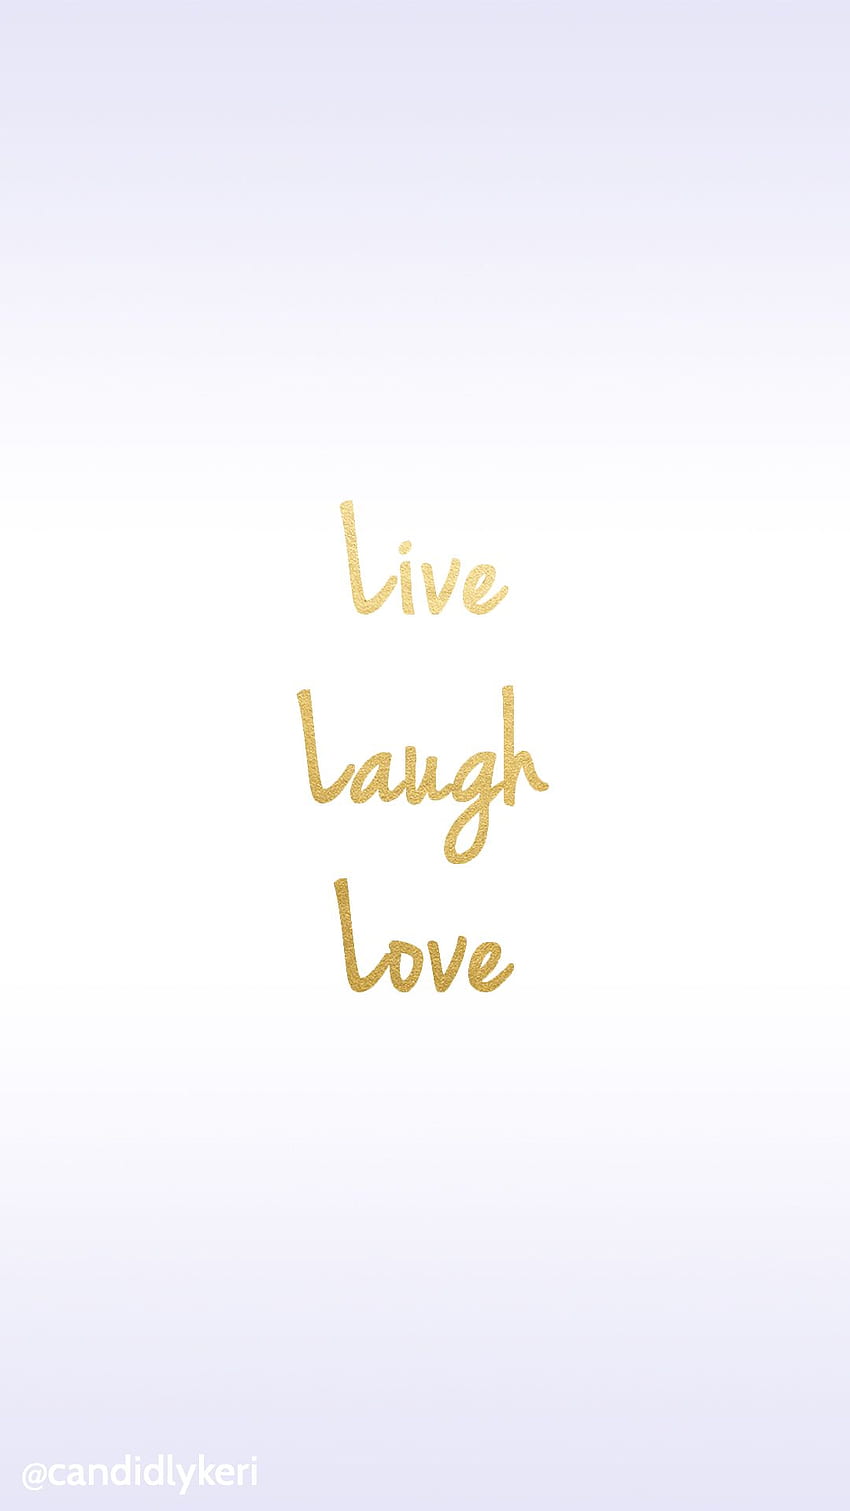 Live Laugh Love  Papel de Parede papeldeparede fundos background  wallpaper iphonewallpaper l  Live laugh love quotes Wallpaper quotes Live  laugh love